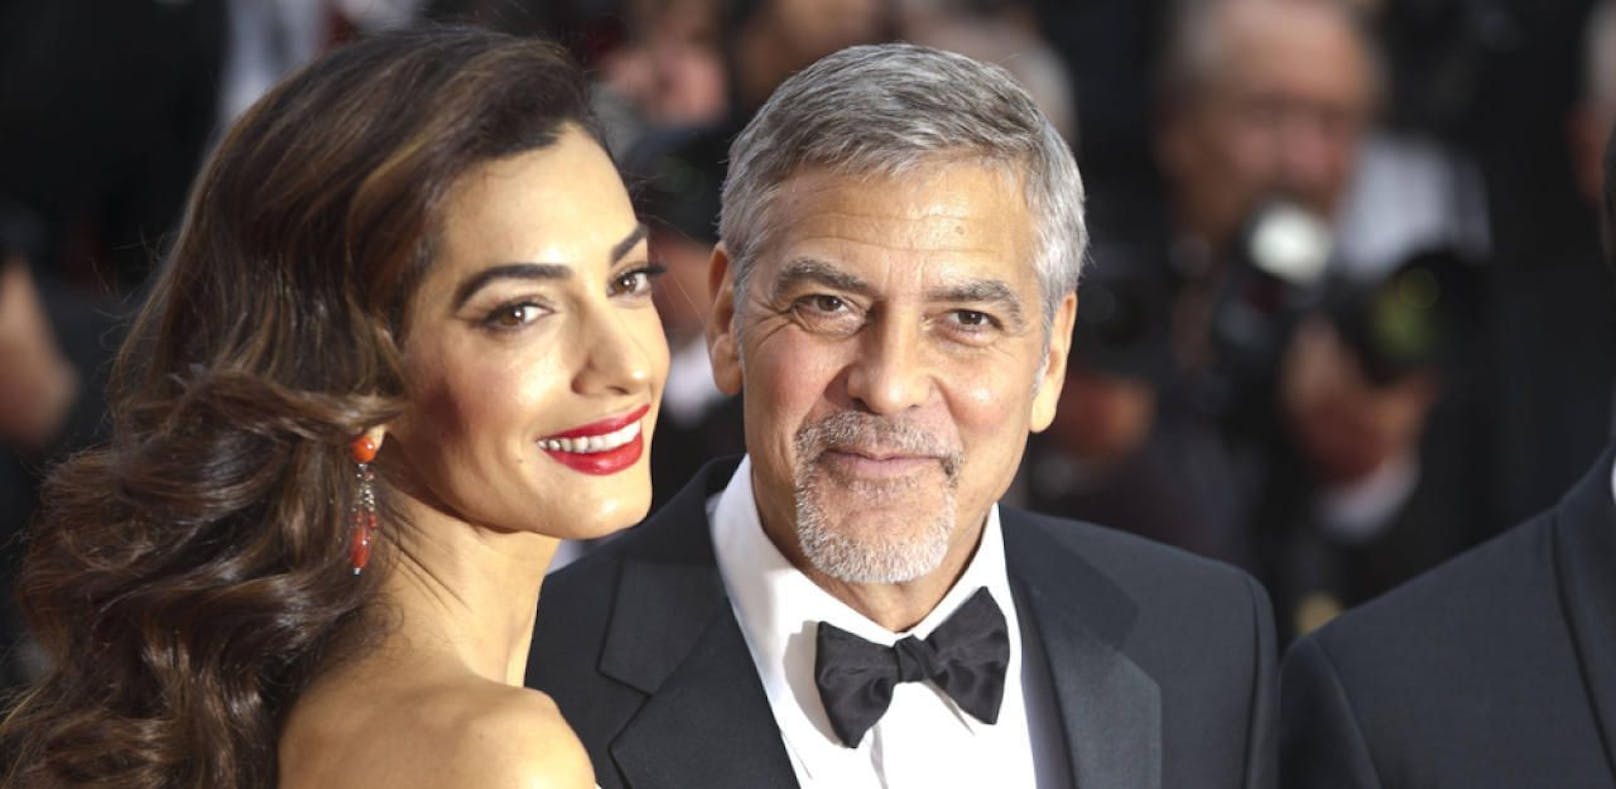 Überraschungsparty für George Clooney